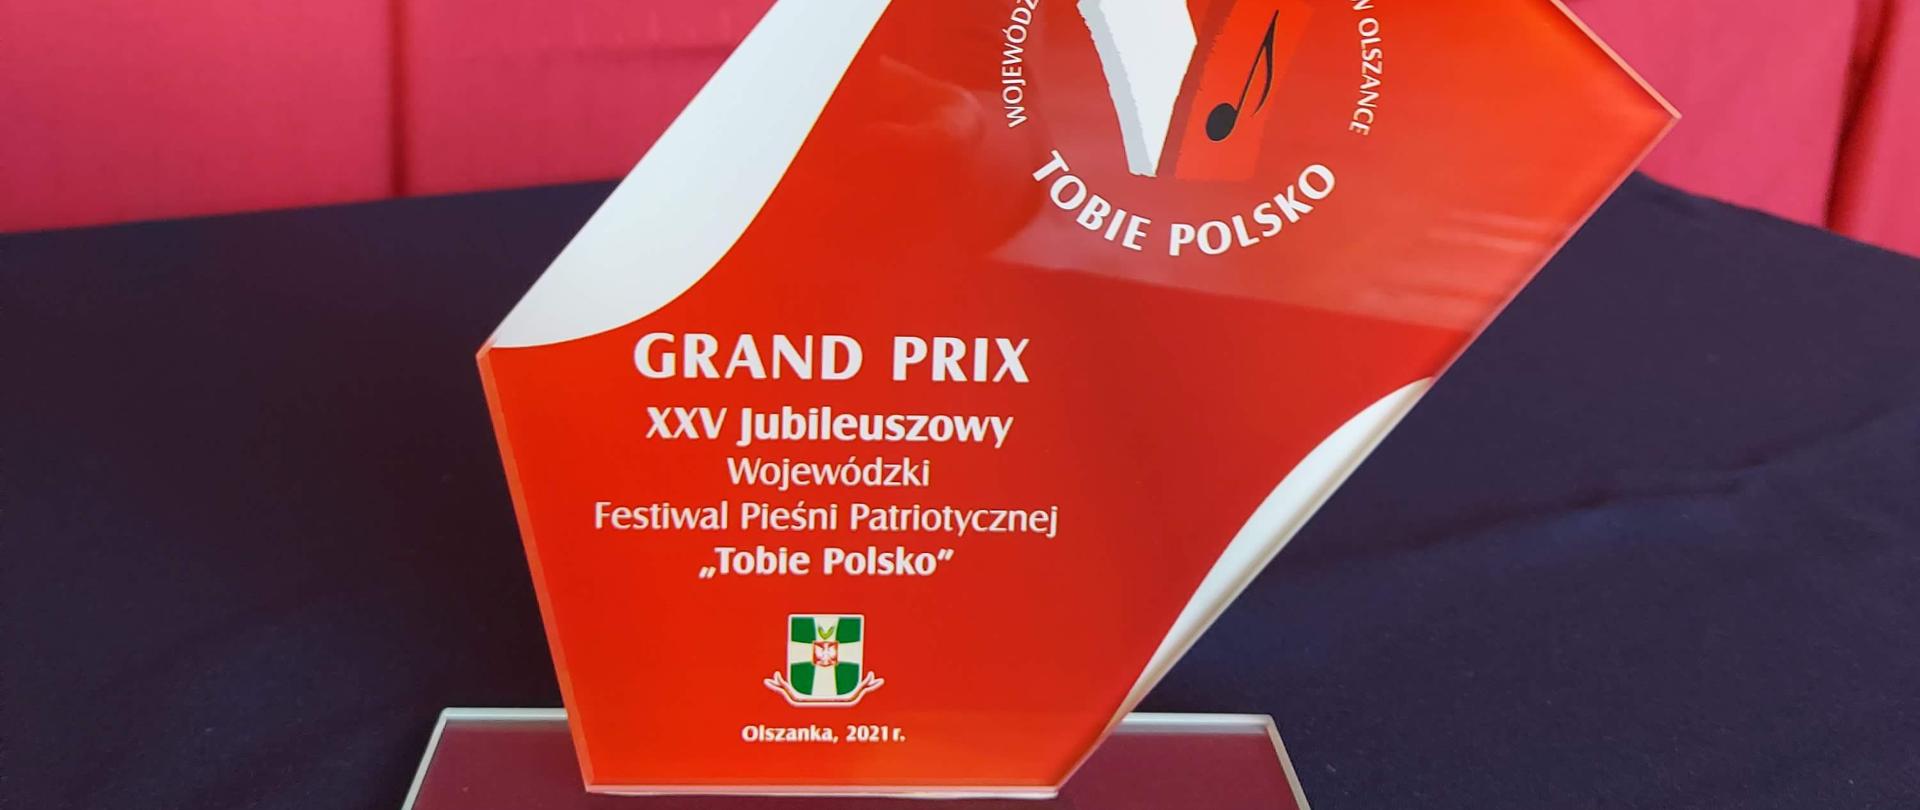 LAUREACI
XXV Jubileuszowego
Wojewódzkiego Festiwalu Pieśni Patriotycznej TOBIE POLSKO
w Olszance
23-24 października 2021r.
